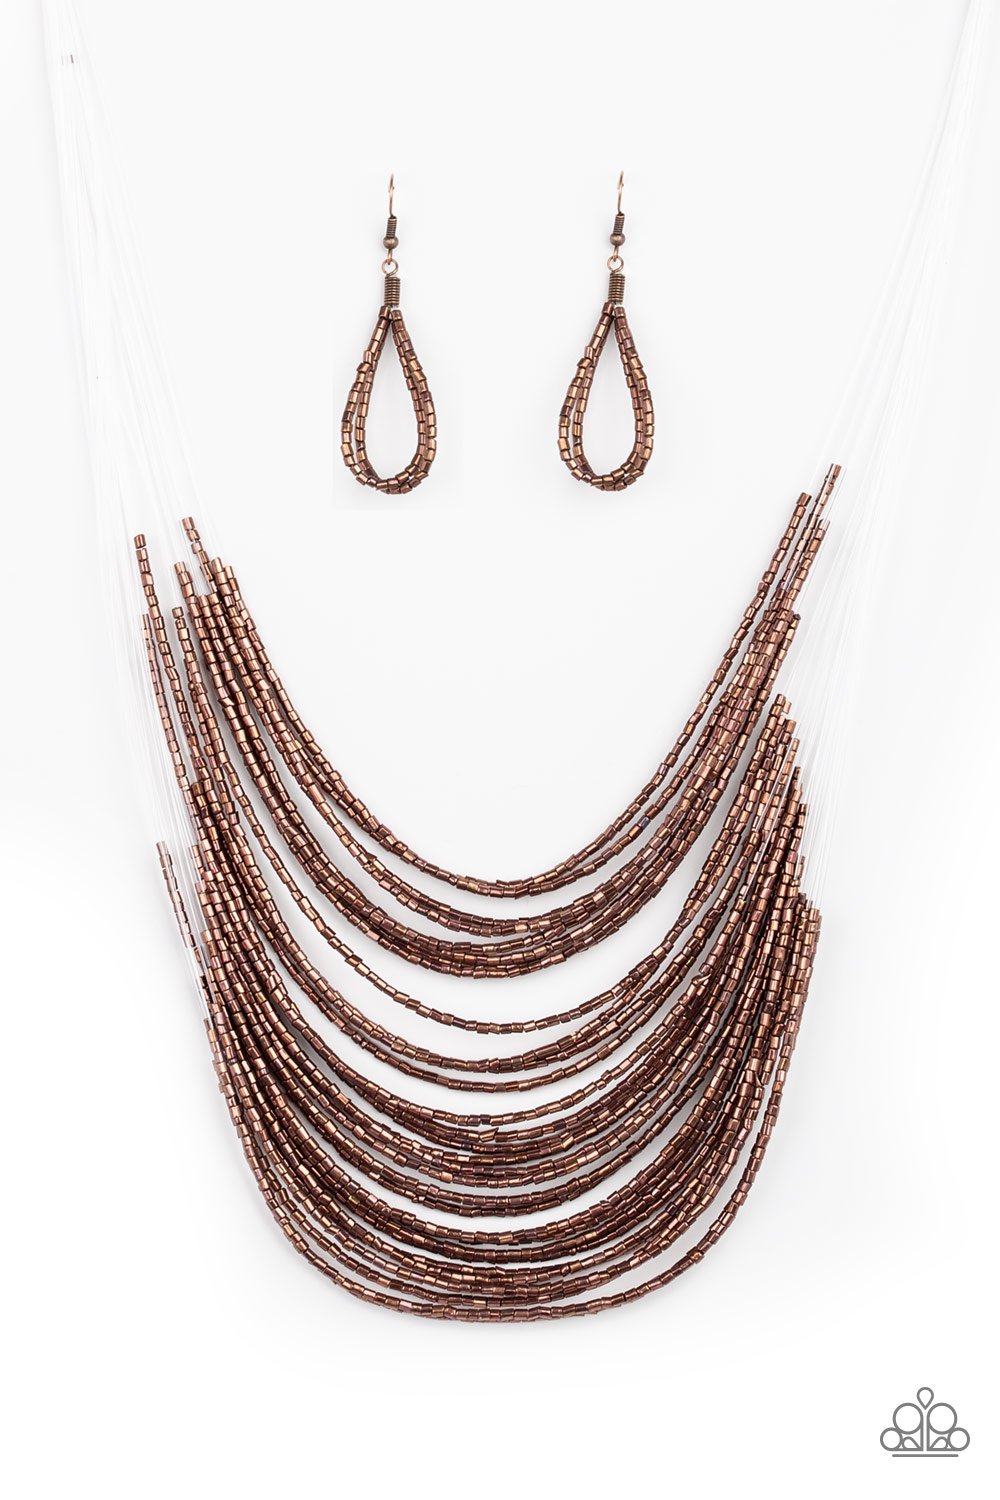 CATWALK Queen - Copper Necklace freeshipping - JewLz4u Gemstone Gallery